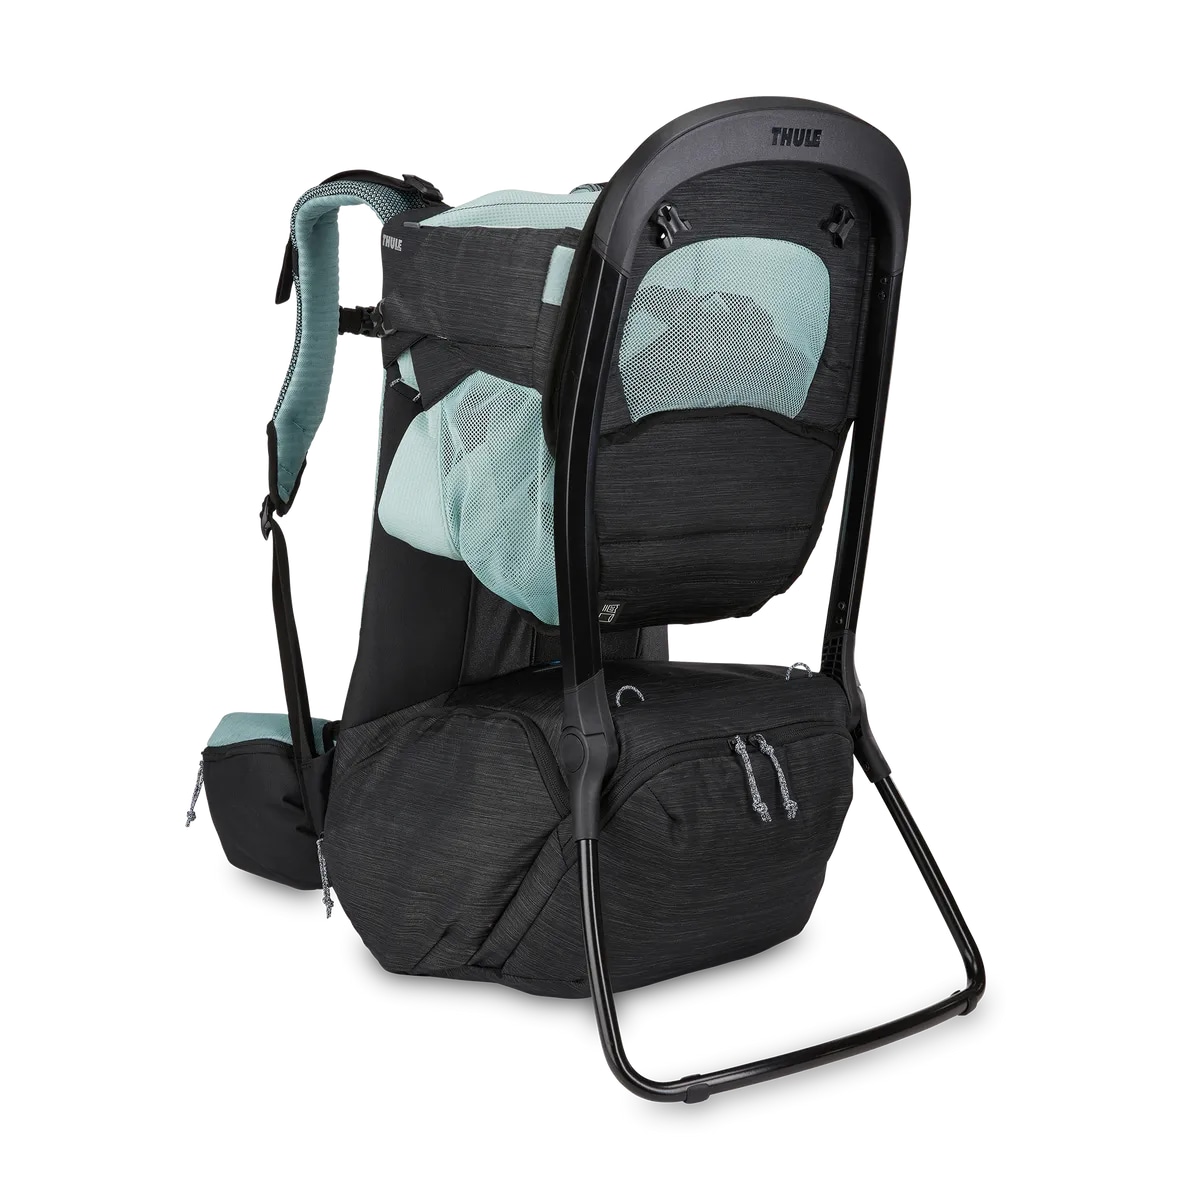 Sapling Child Carrier Backpack Black